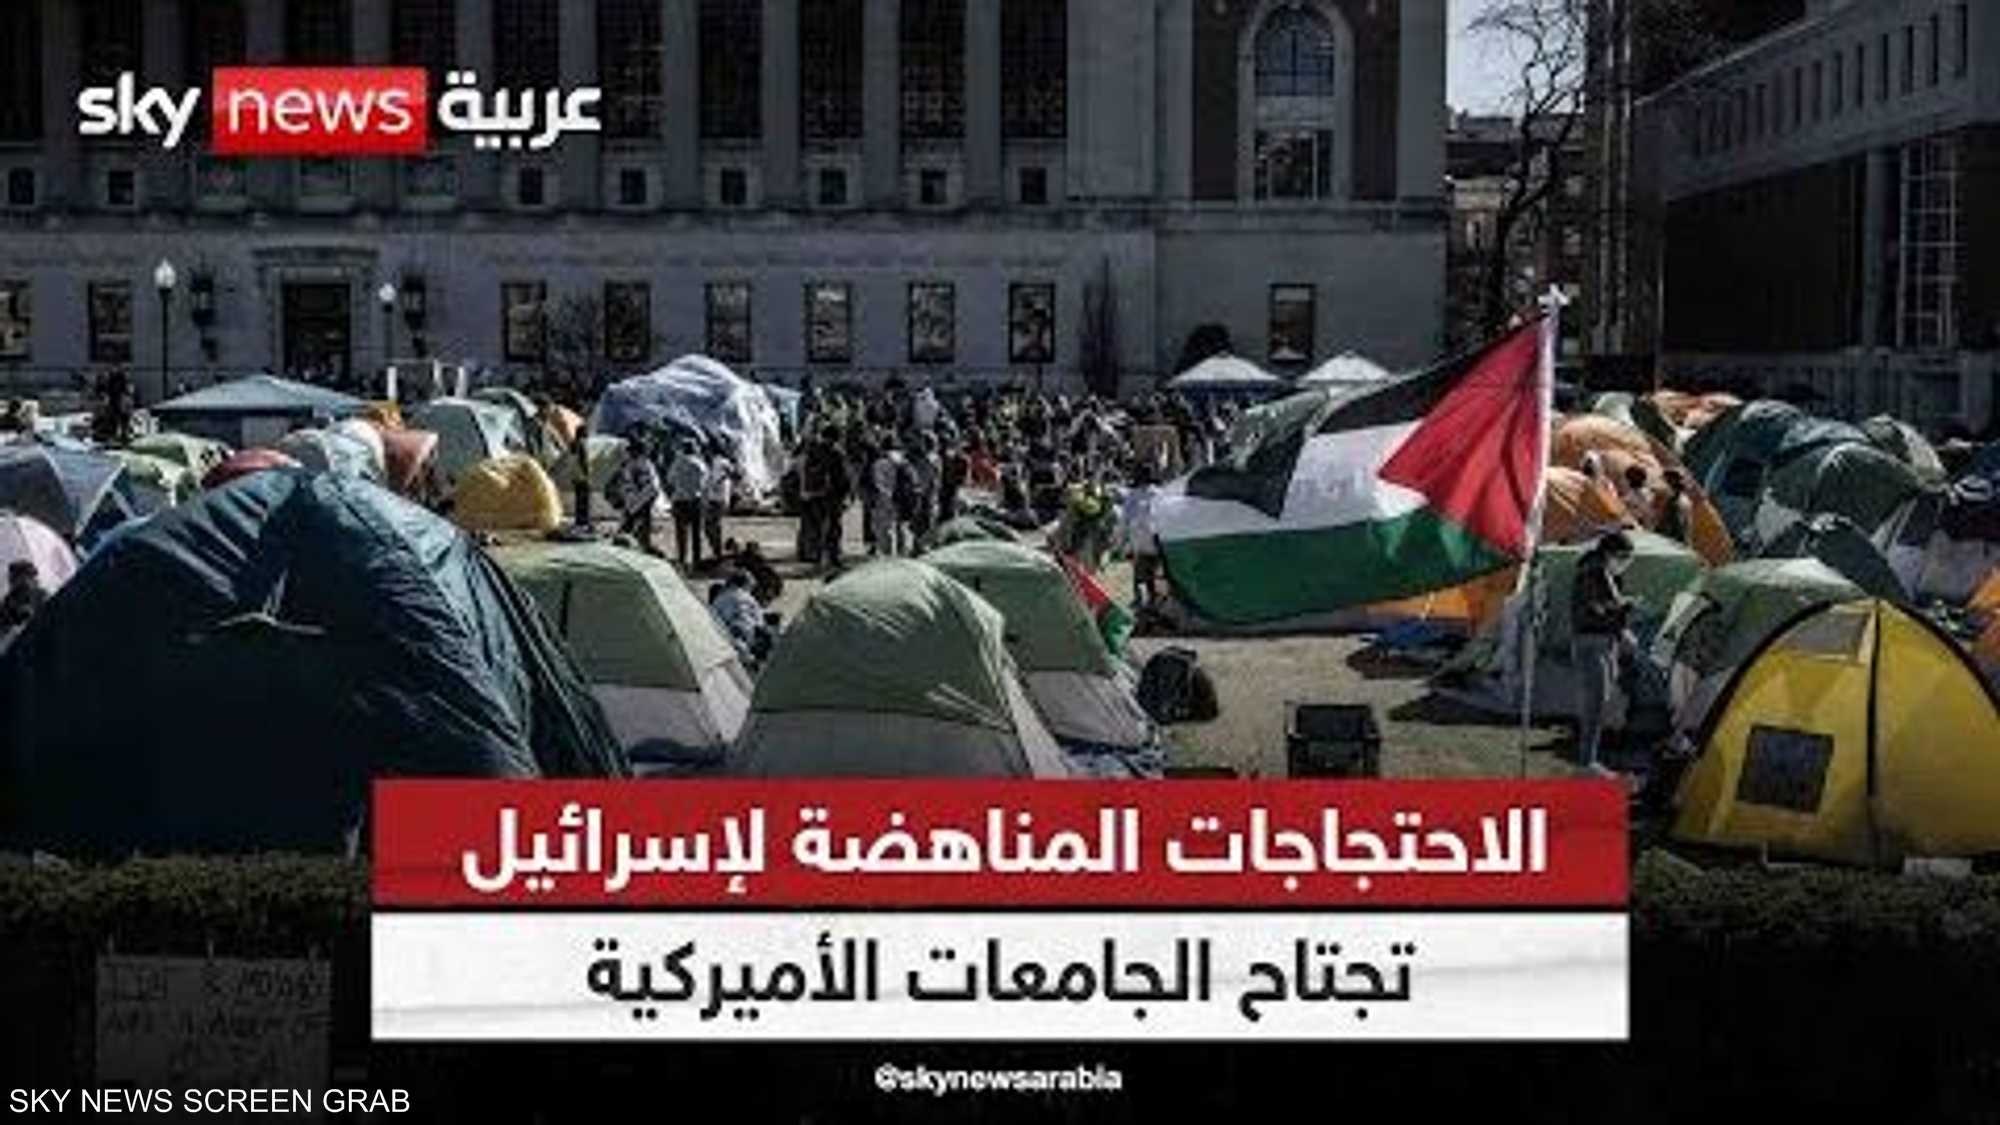 استمرار تظاهرات الطلاب المؤيدة للفلسطينيين بجامعات أميركية